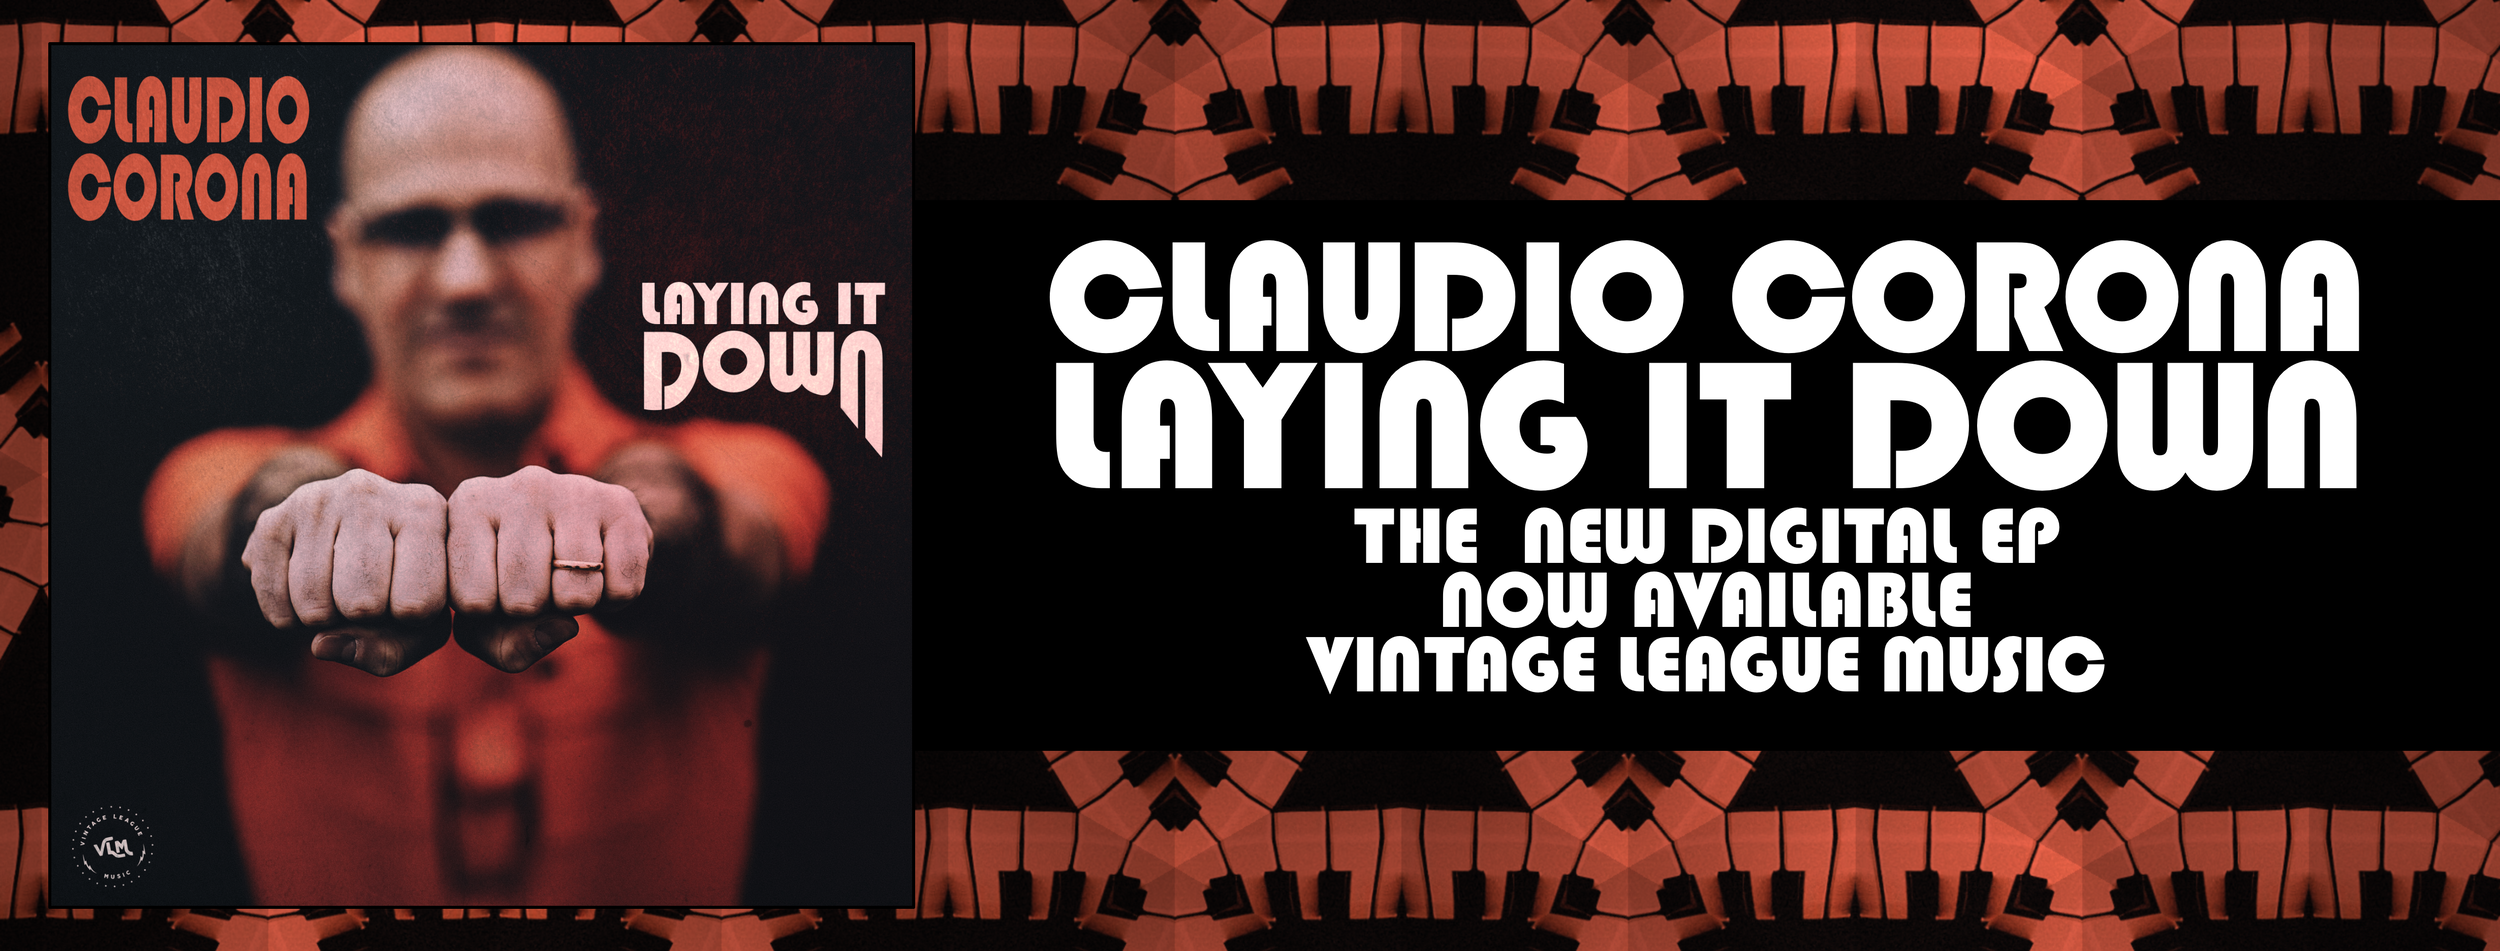 Claudio Corona - Laying It Down - banner@2x.png